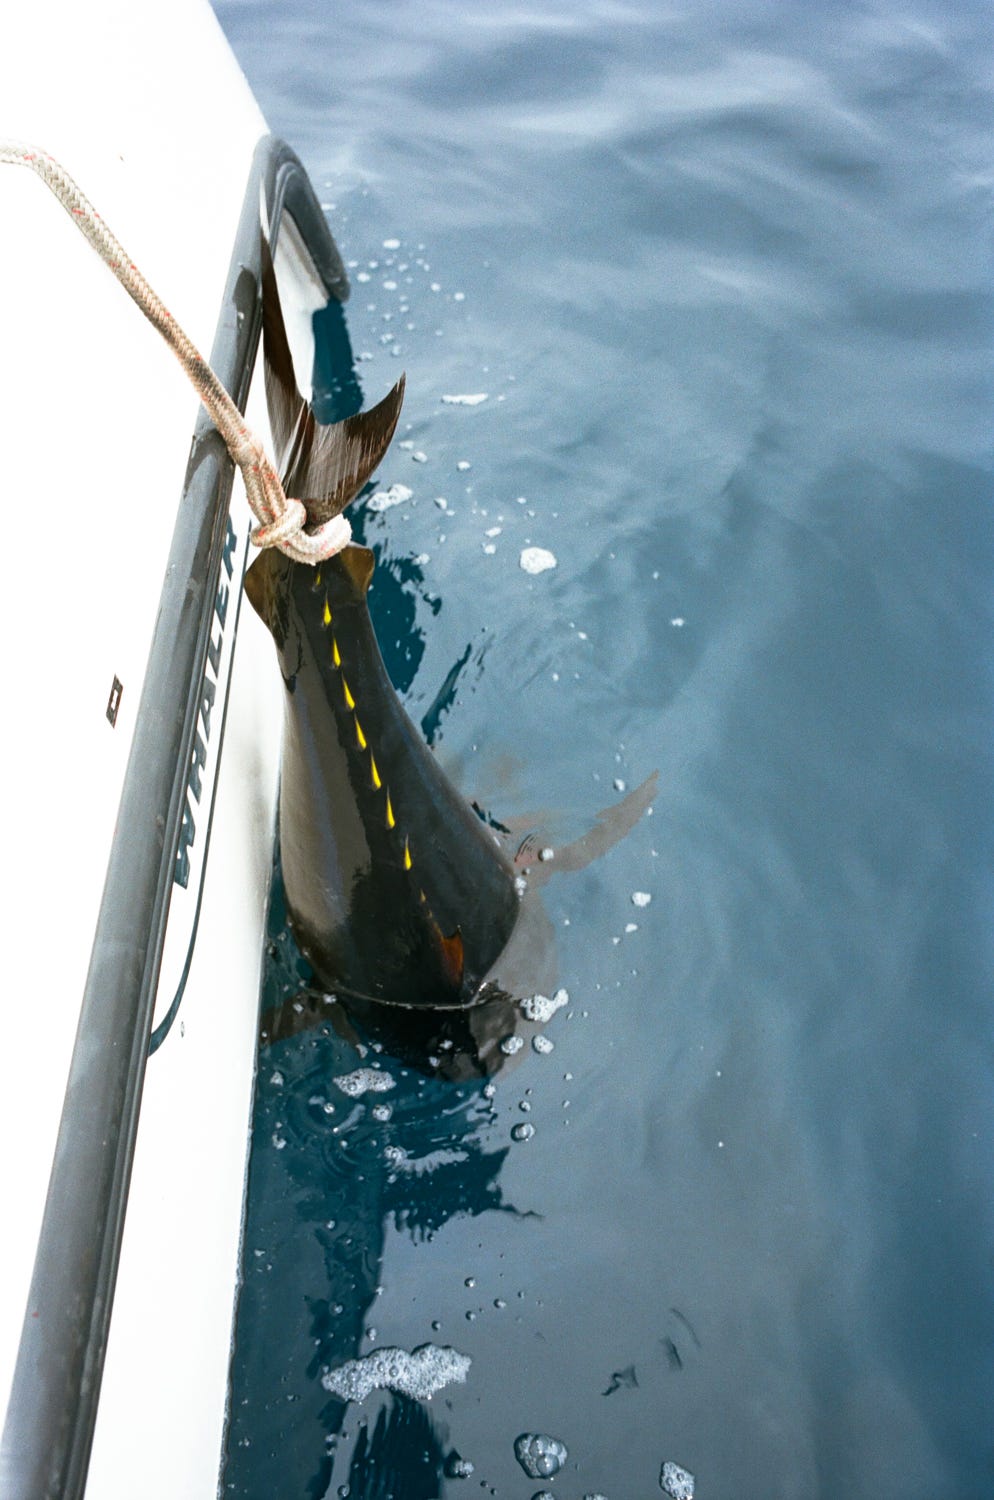 "Swimming" a bluefin tuna off the boat